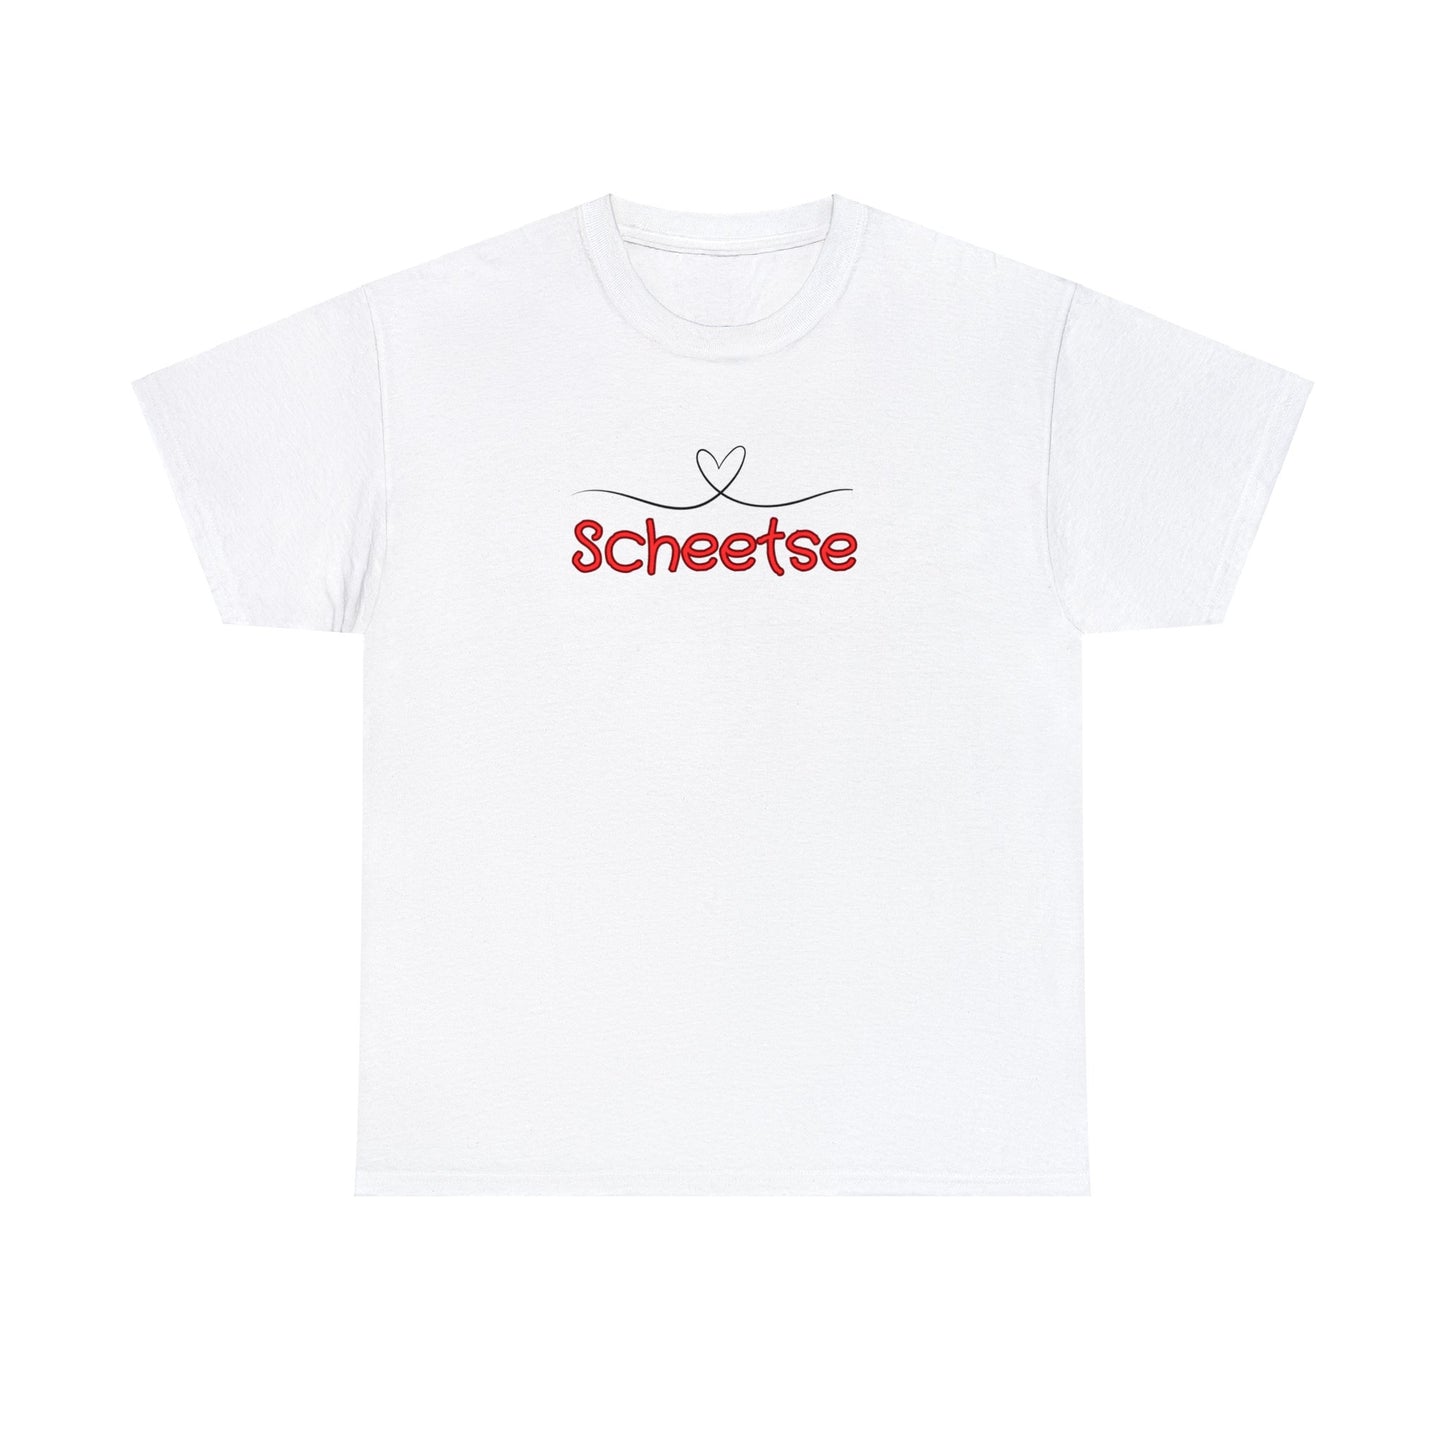 Int Gentsch - Tshirt - Scheetse